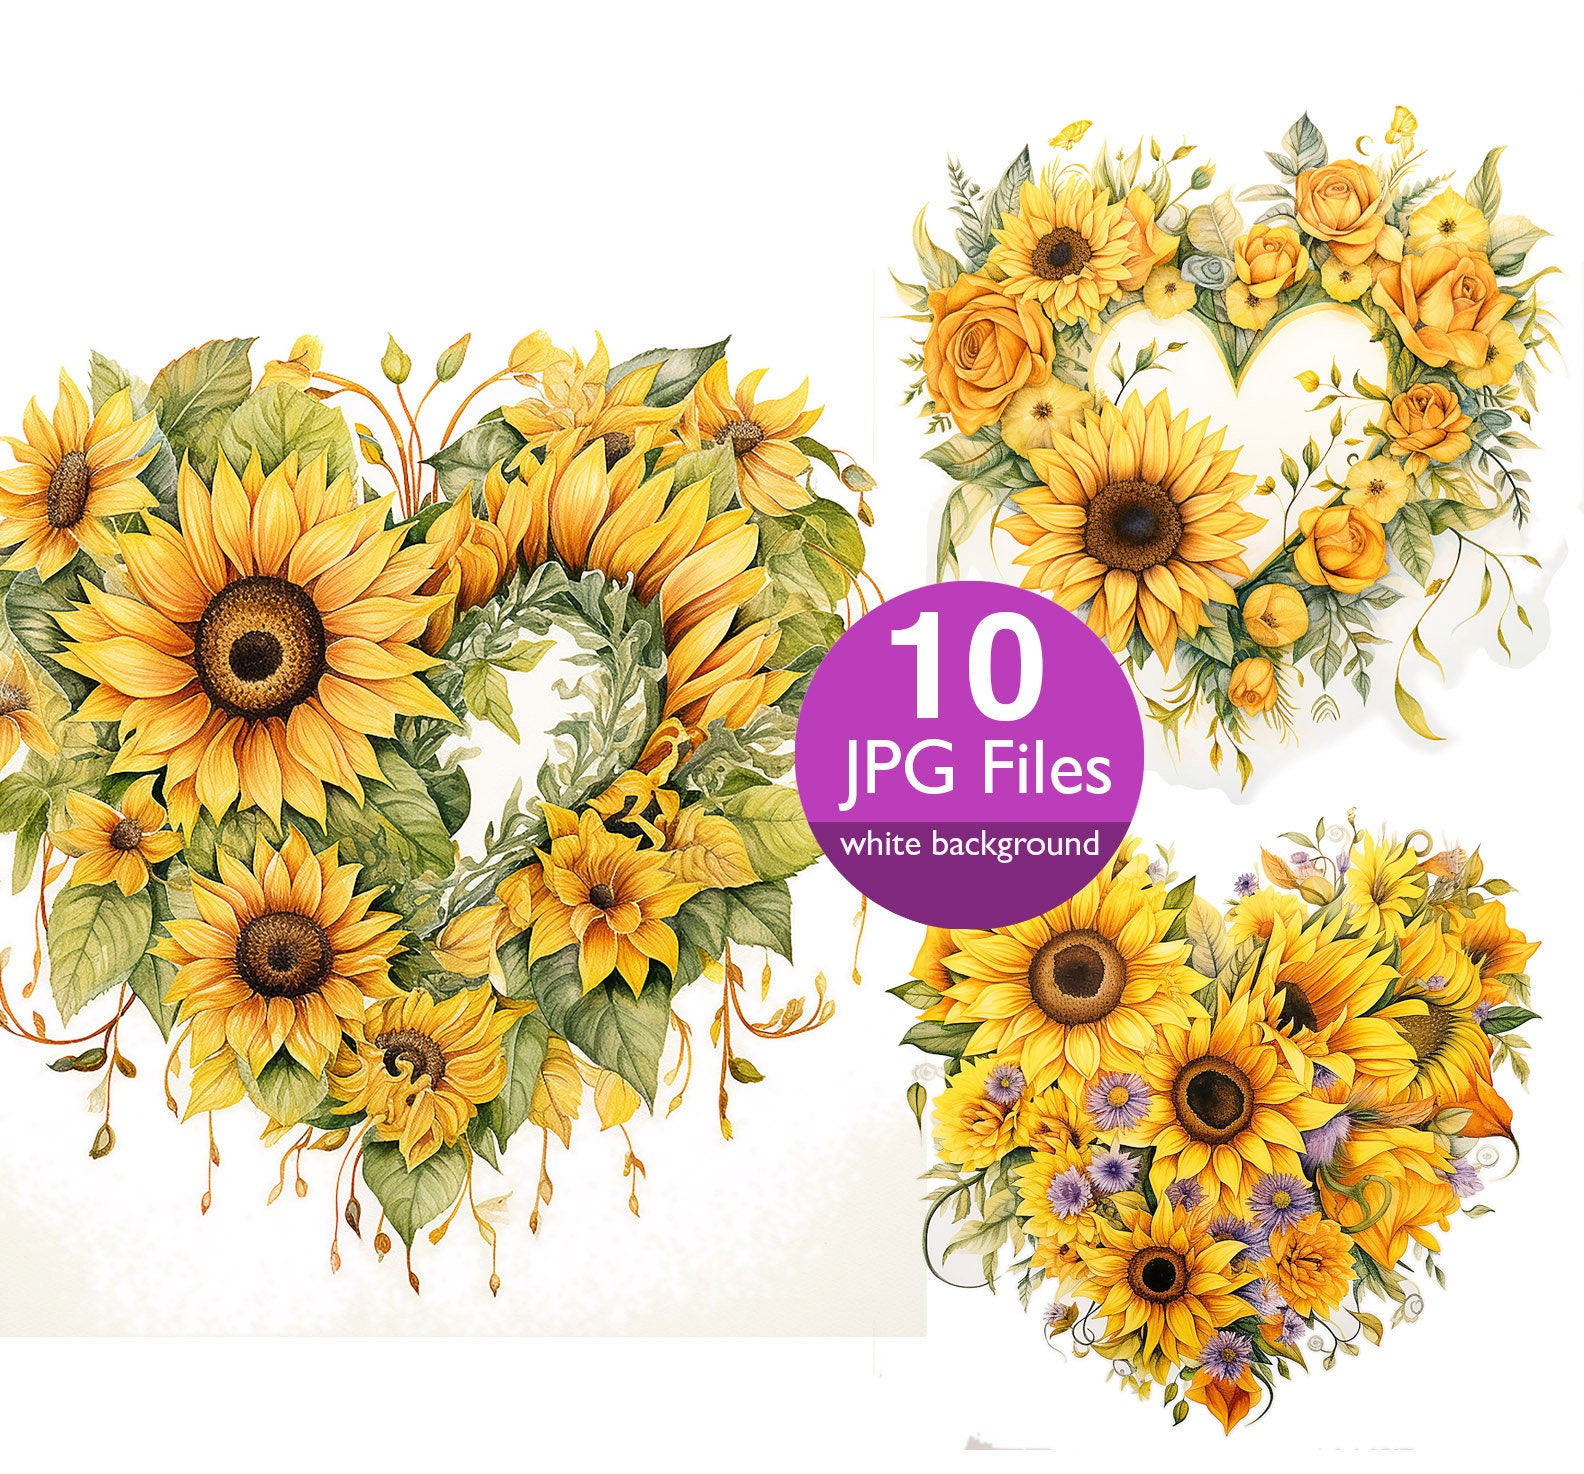 Sunflower Ephemera Journal Kit – Milton's Daughter